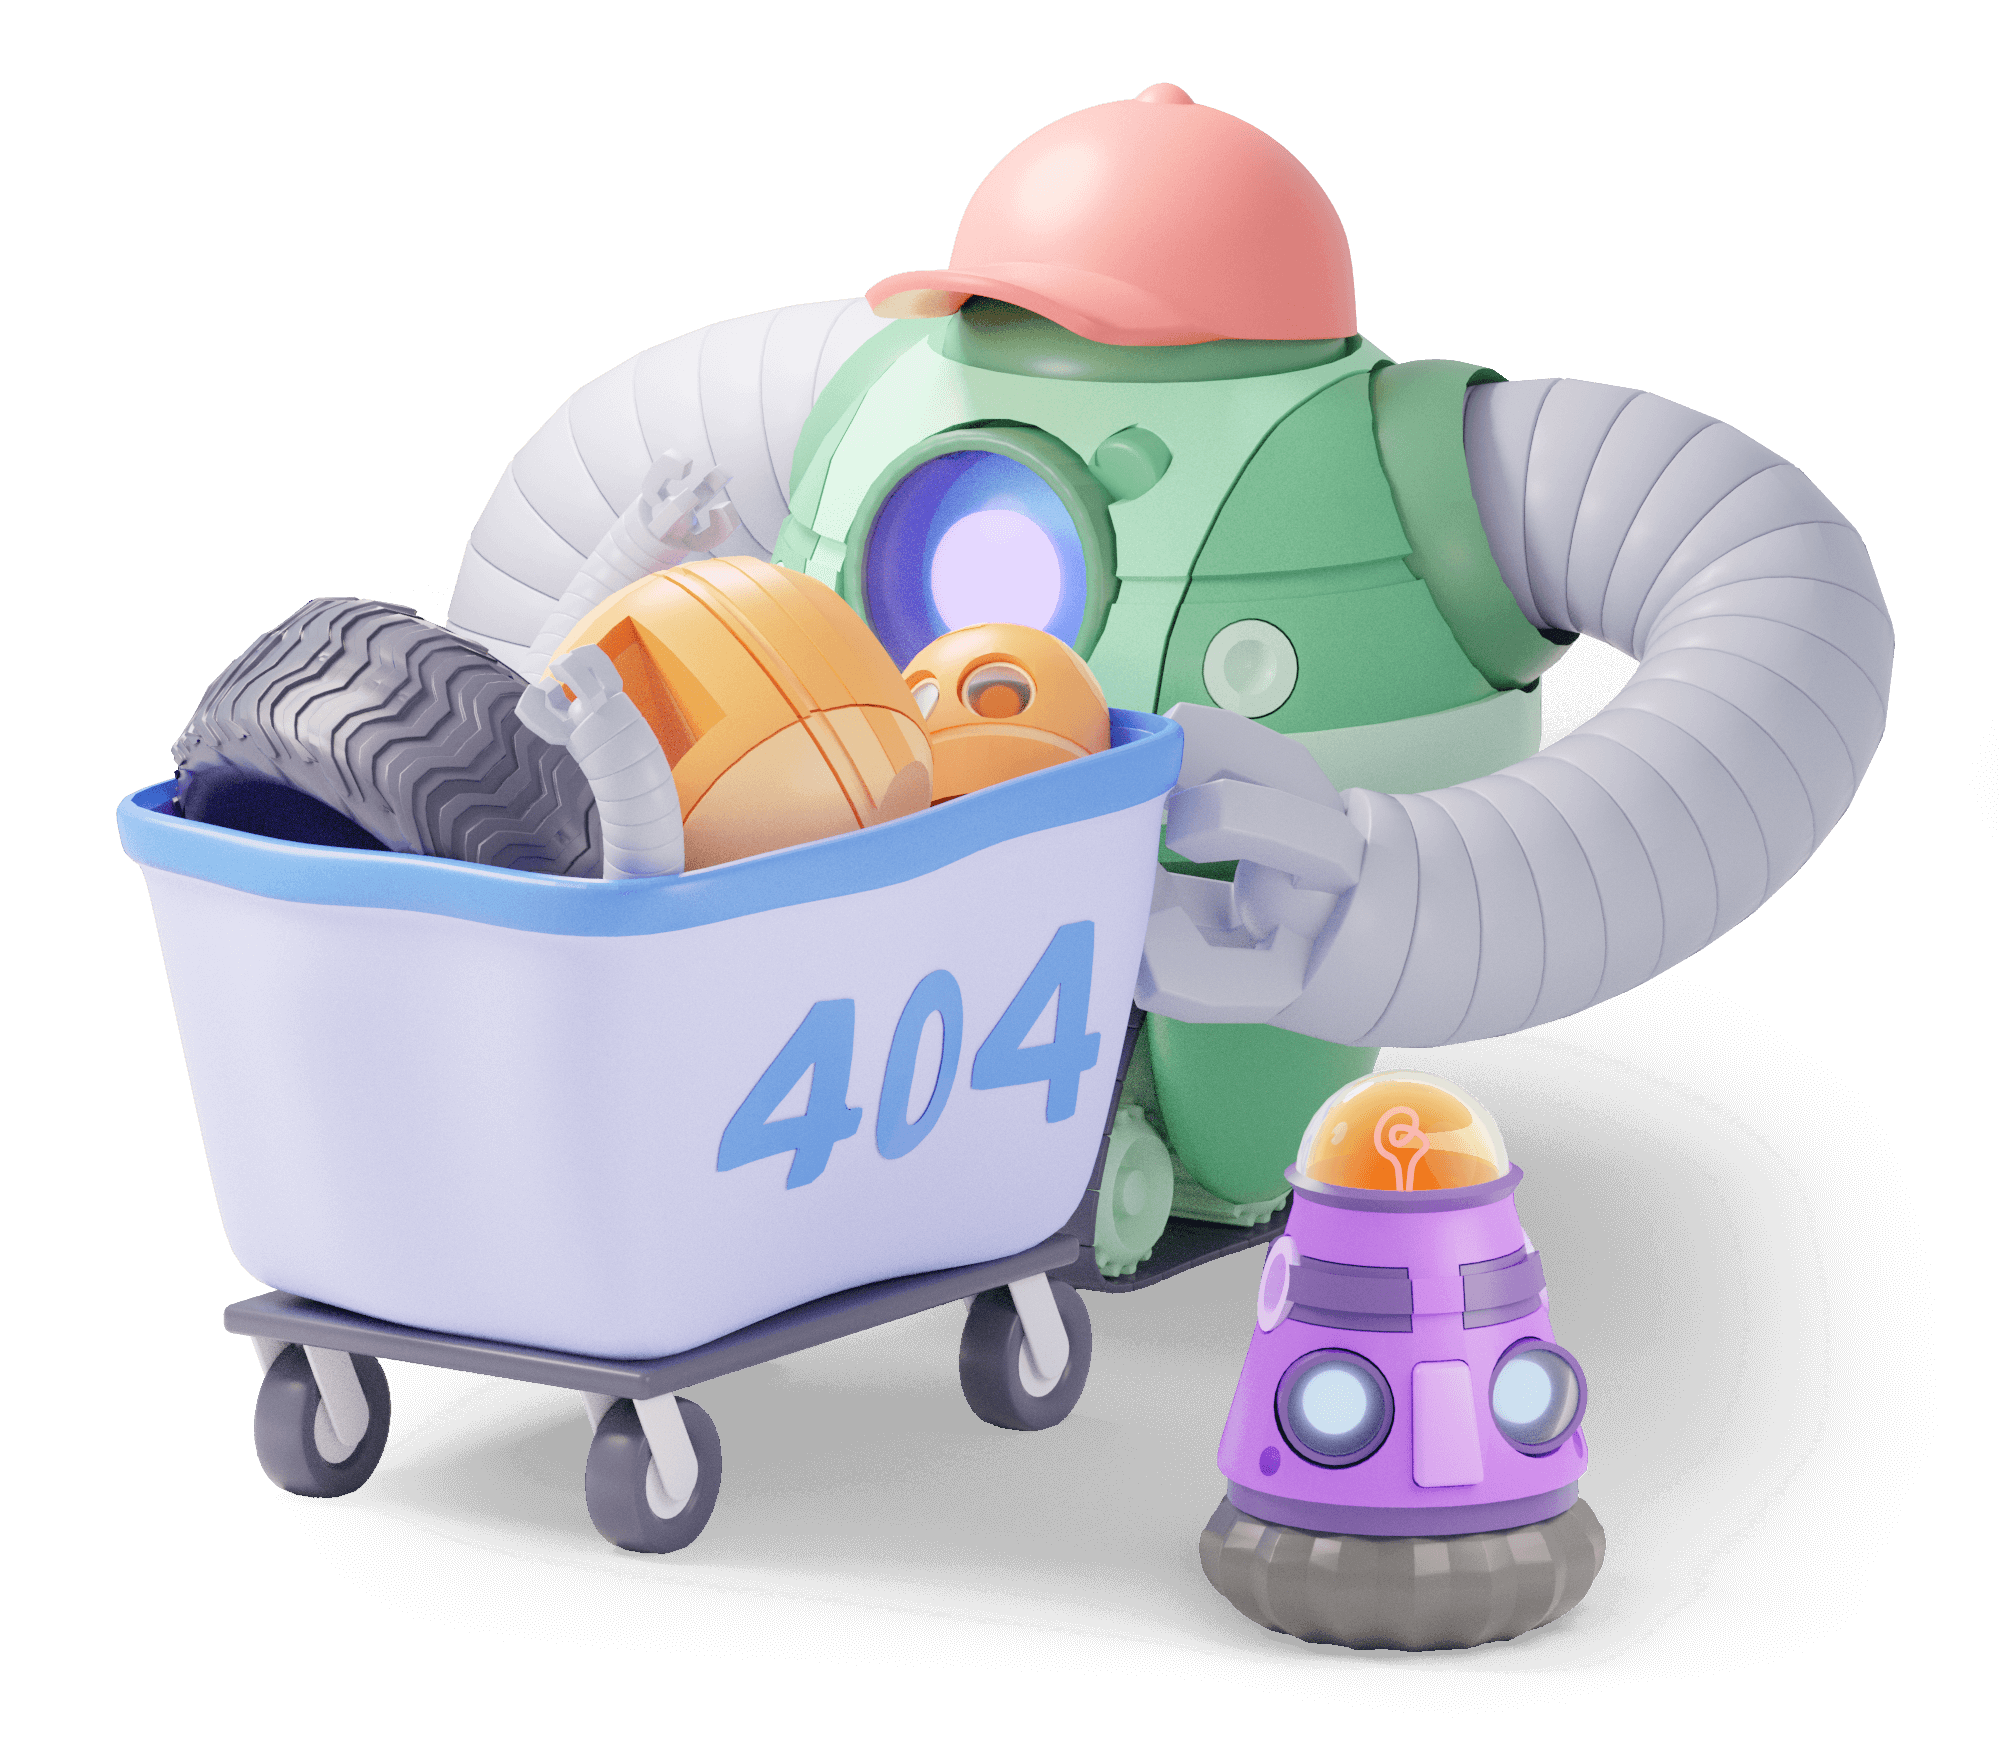 AWeber 404 Automation